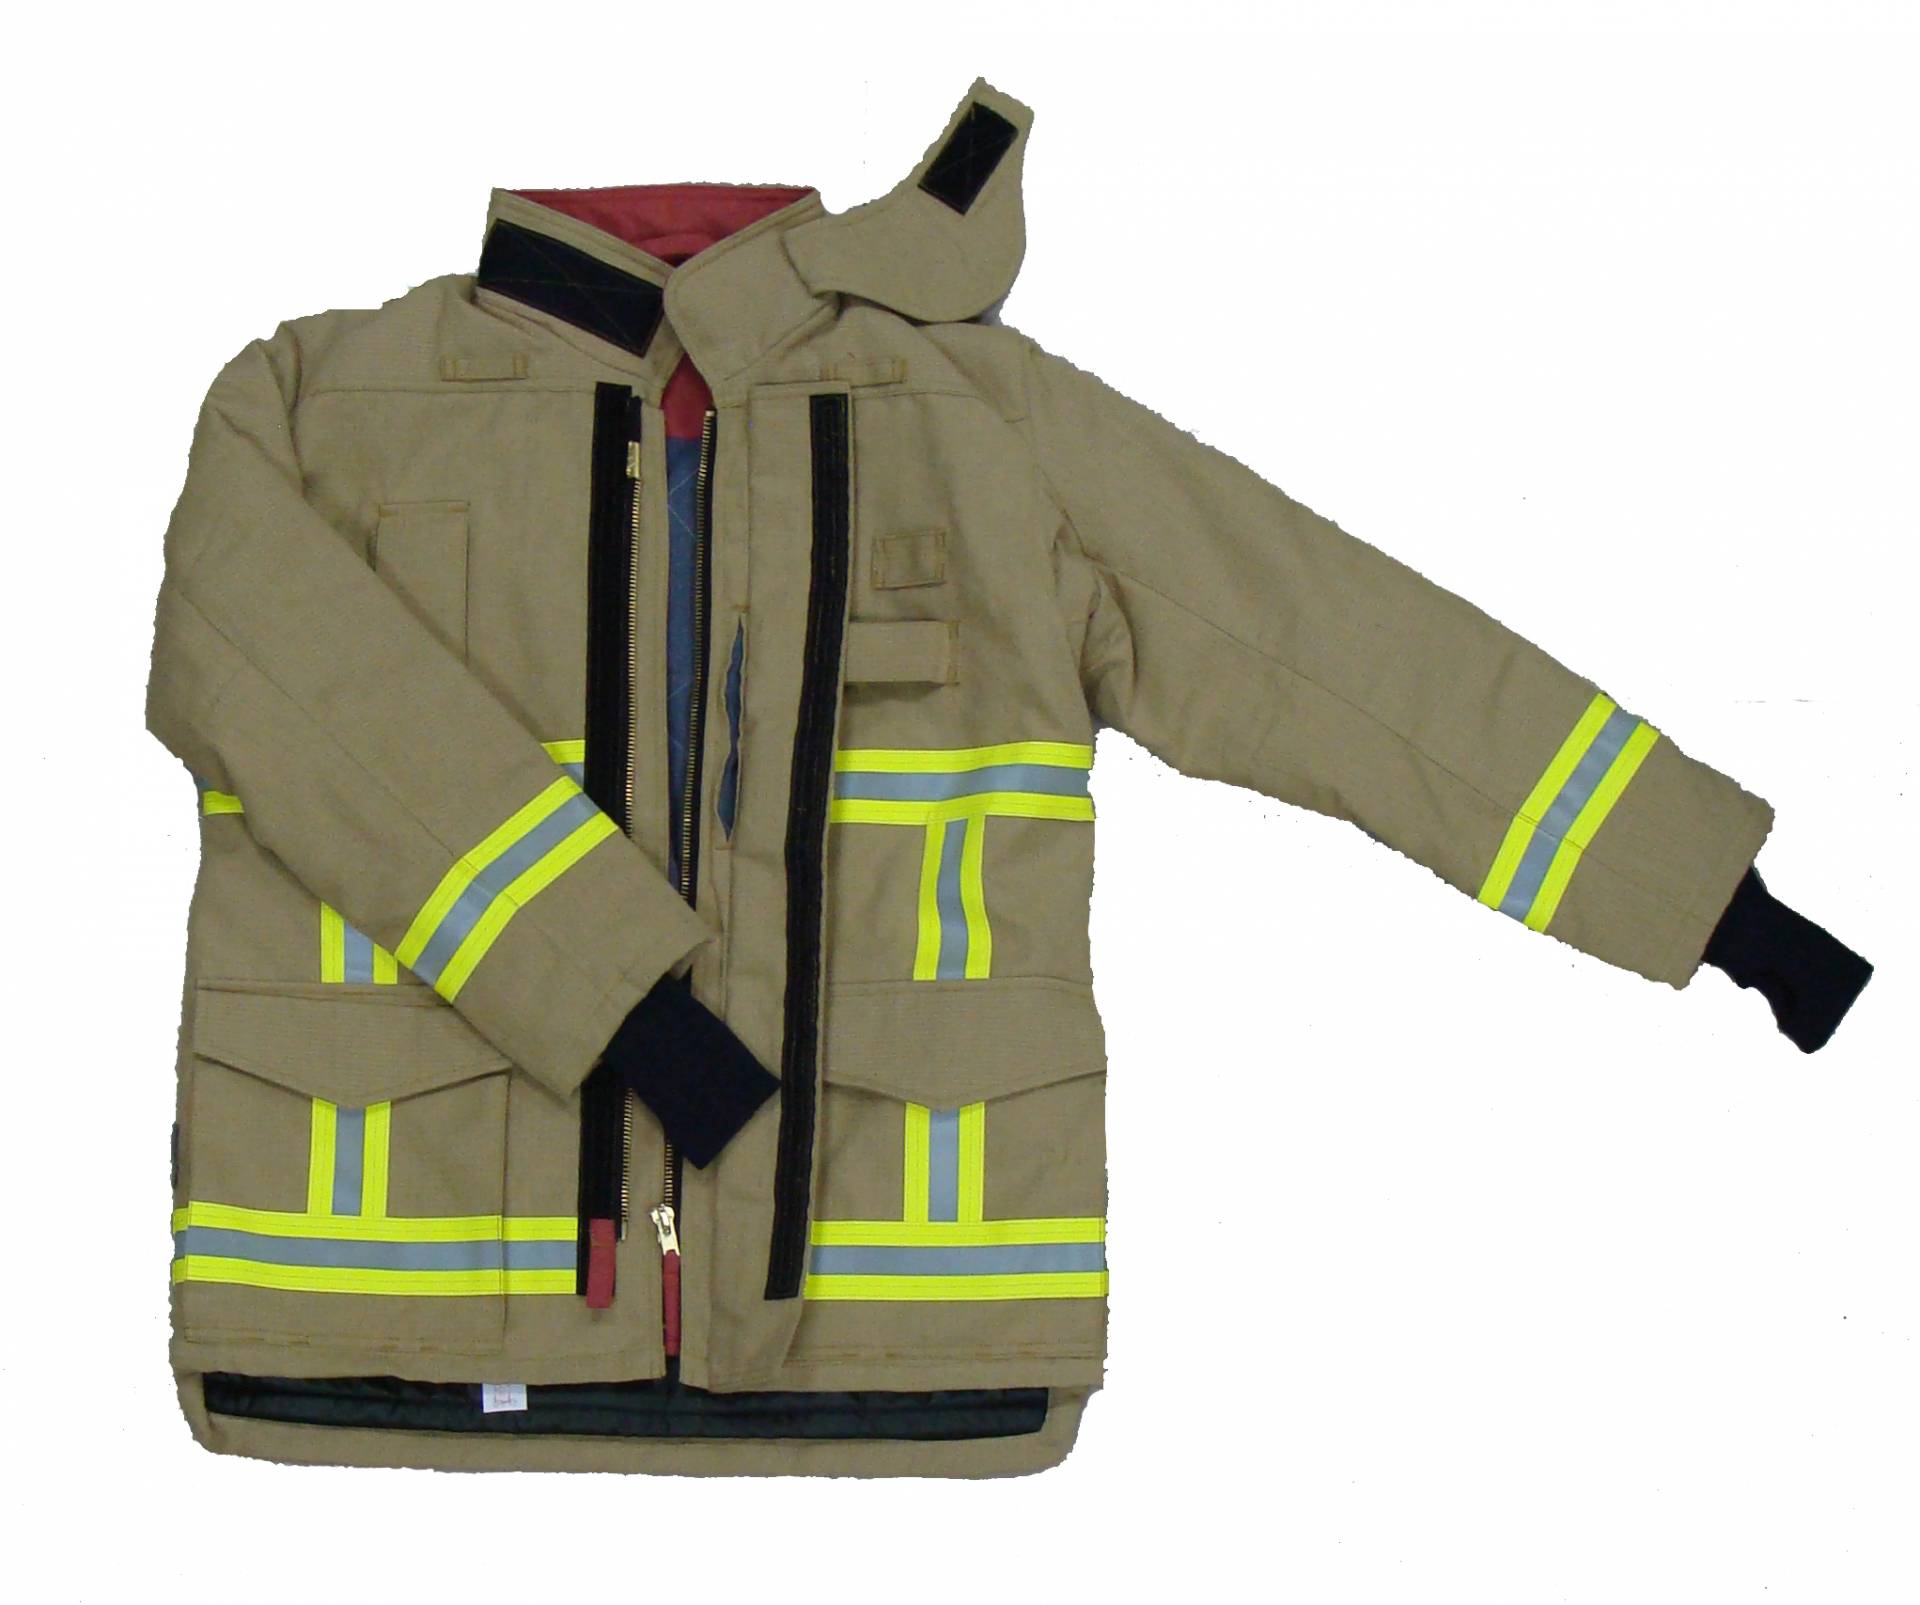 พรีเมี่ยม 701-G ชุดดับเพลิงสไตล์ยุโรป, EN469 ระดับ 2, ใบรับรอง CE, งานหนักเพื่อปกป้องนักผจญเพลิง